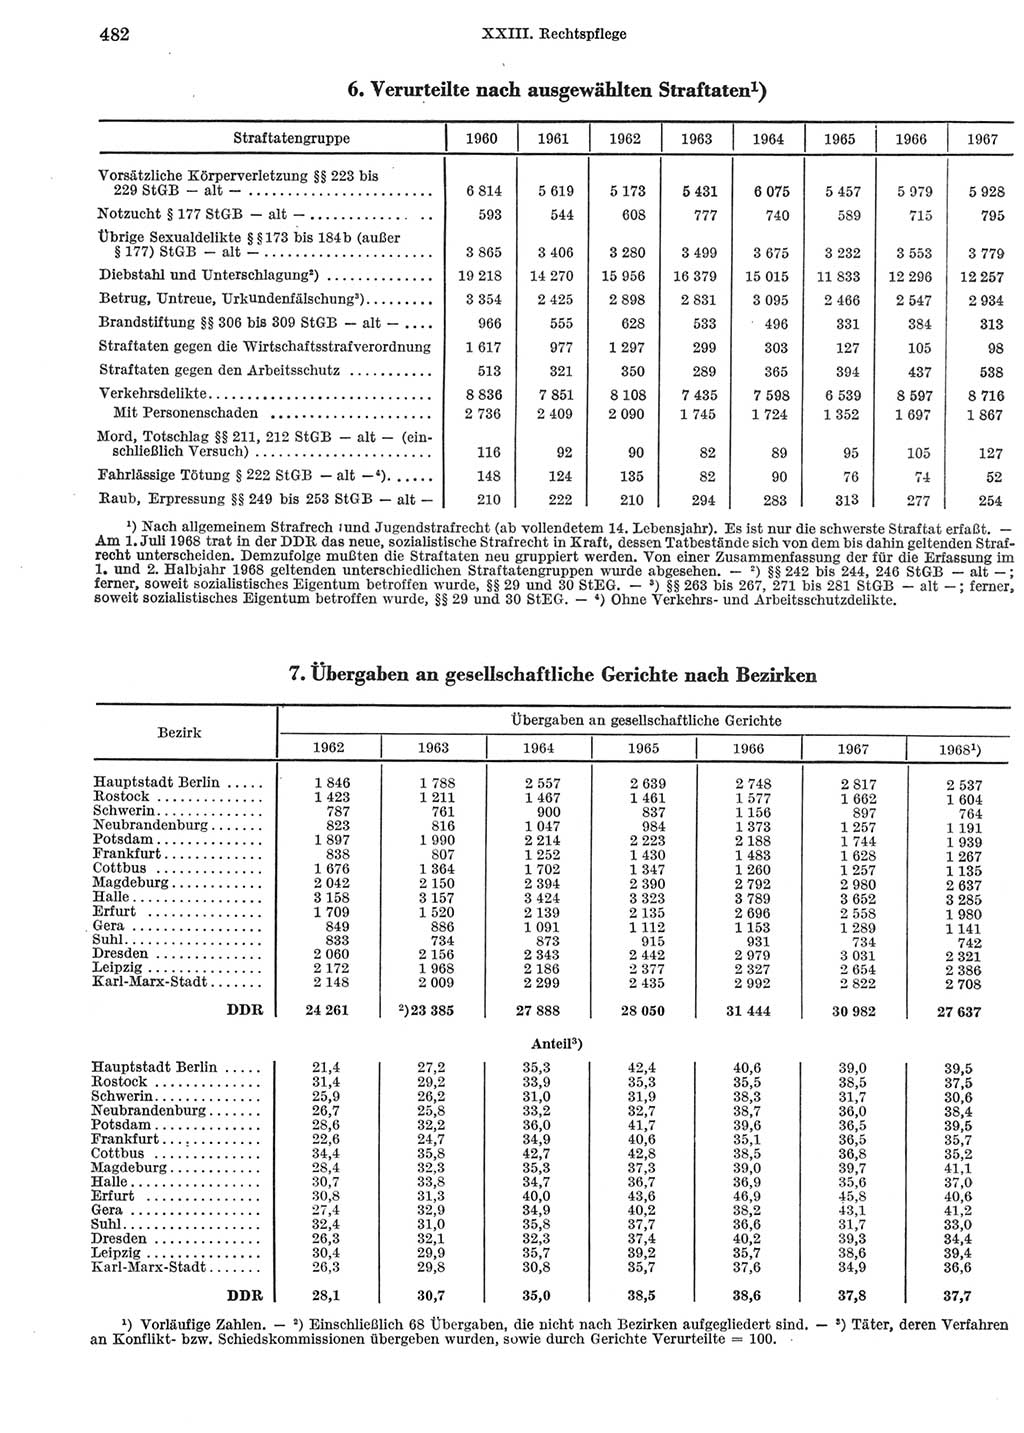 Statistisches Jahrbuch der Deutschen Demokratischen Republik (DDR) 1969, Seite 482 (Stat. Jb. DDR 1969, S. 482)